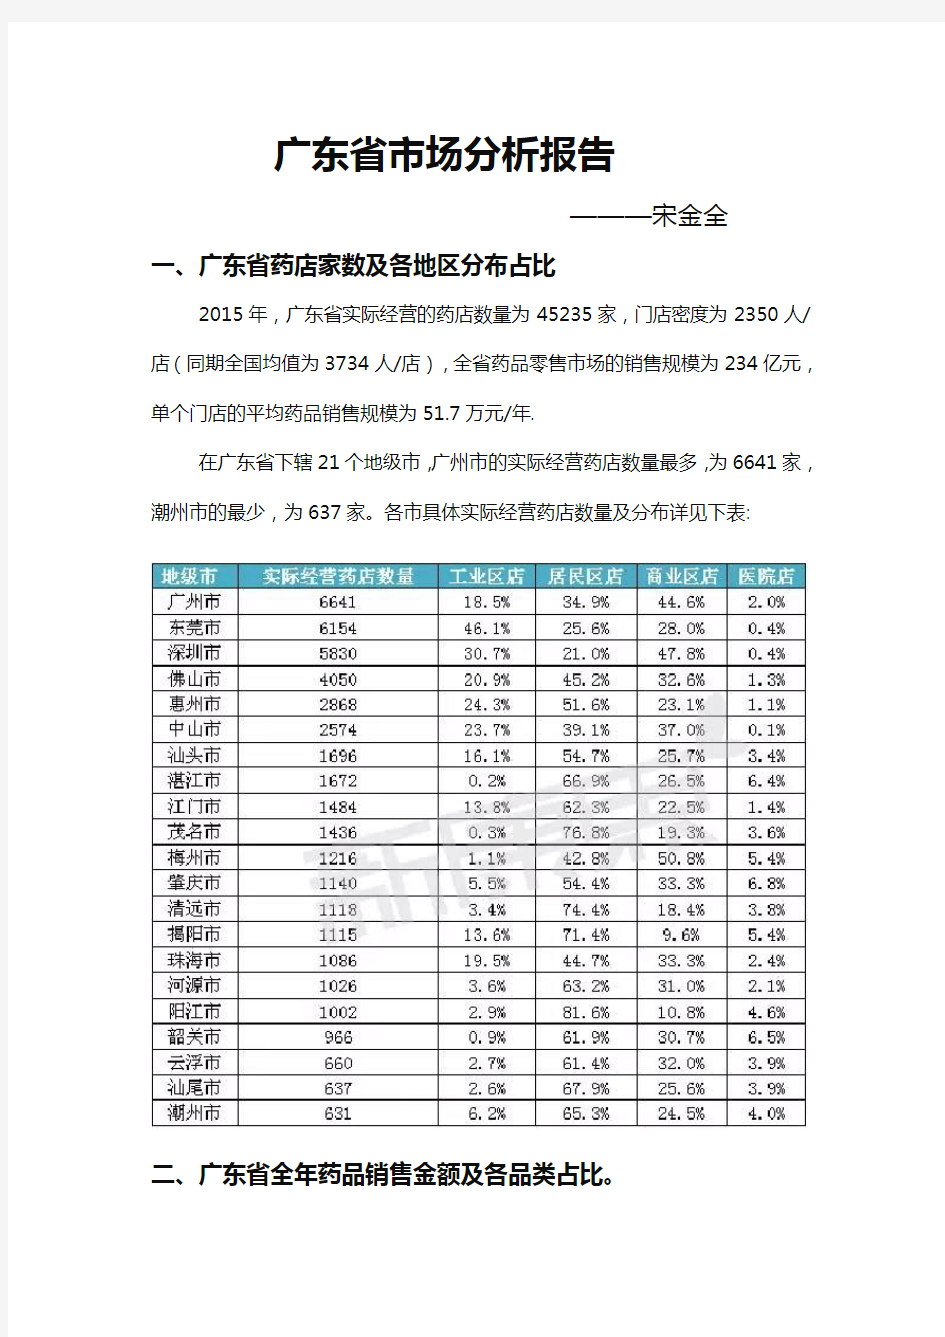 广东省药品数据分析